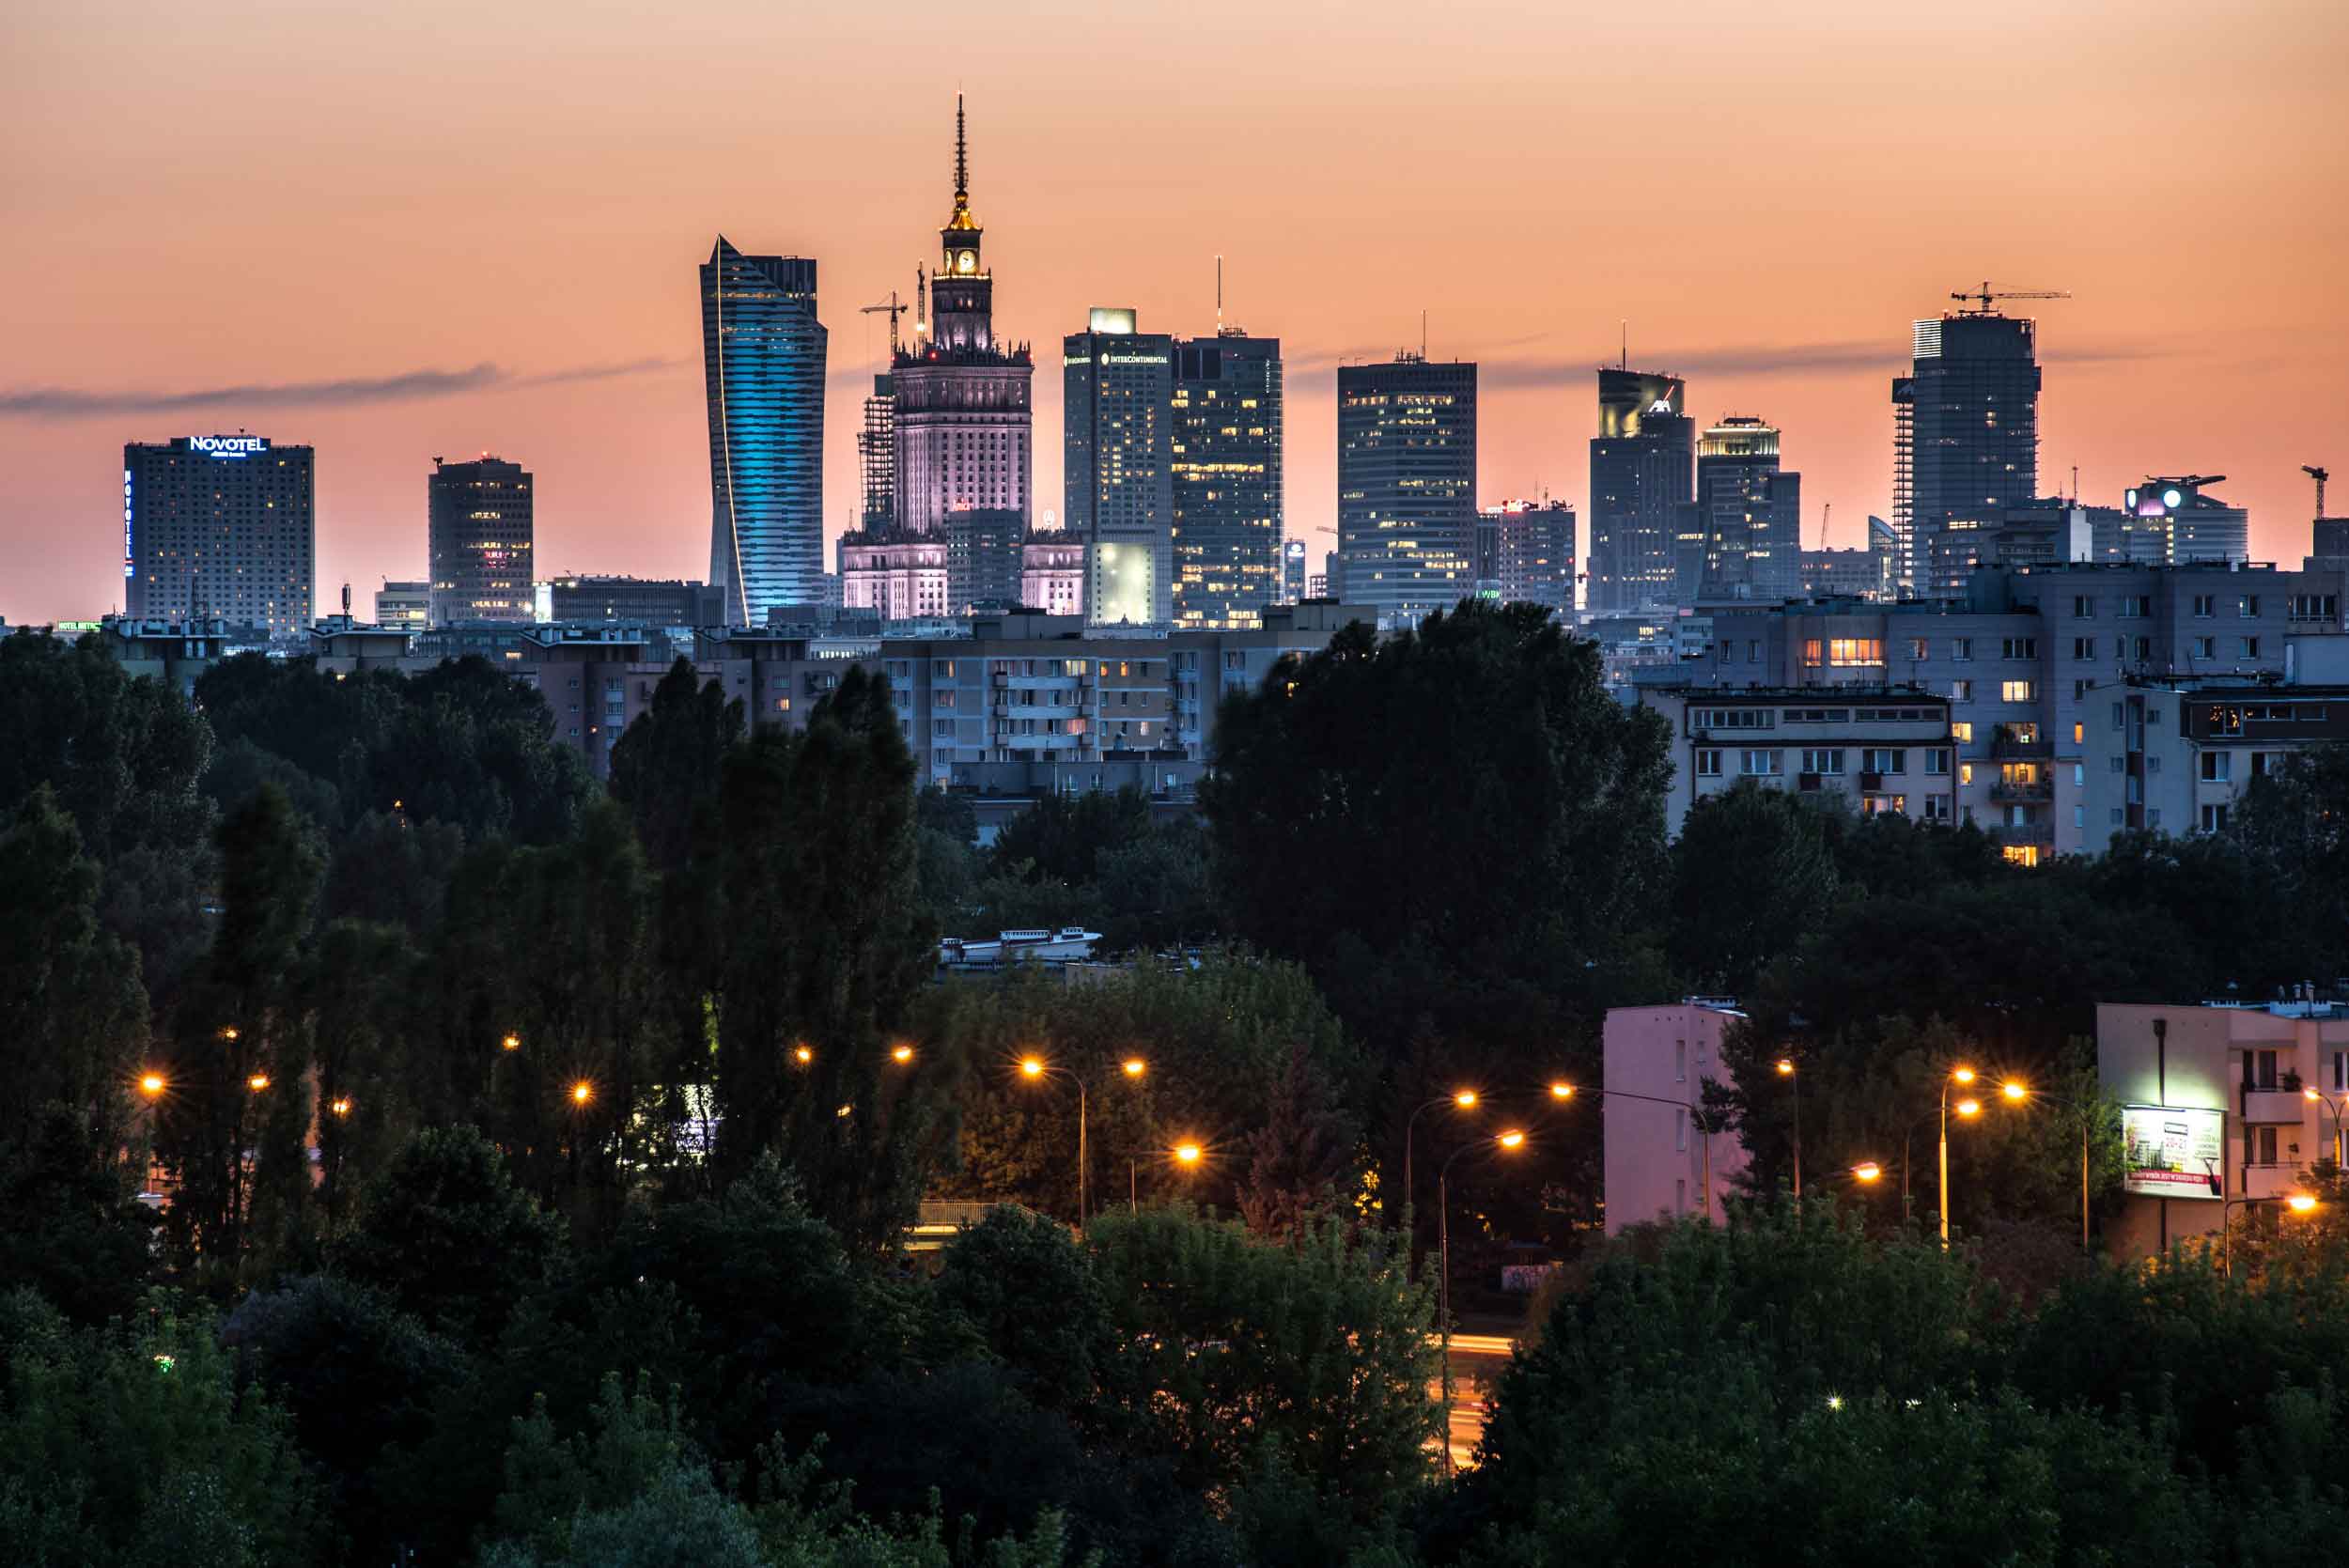 Warsaw views